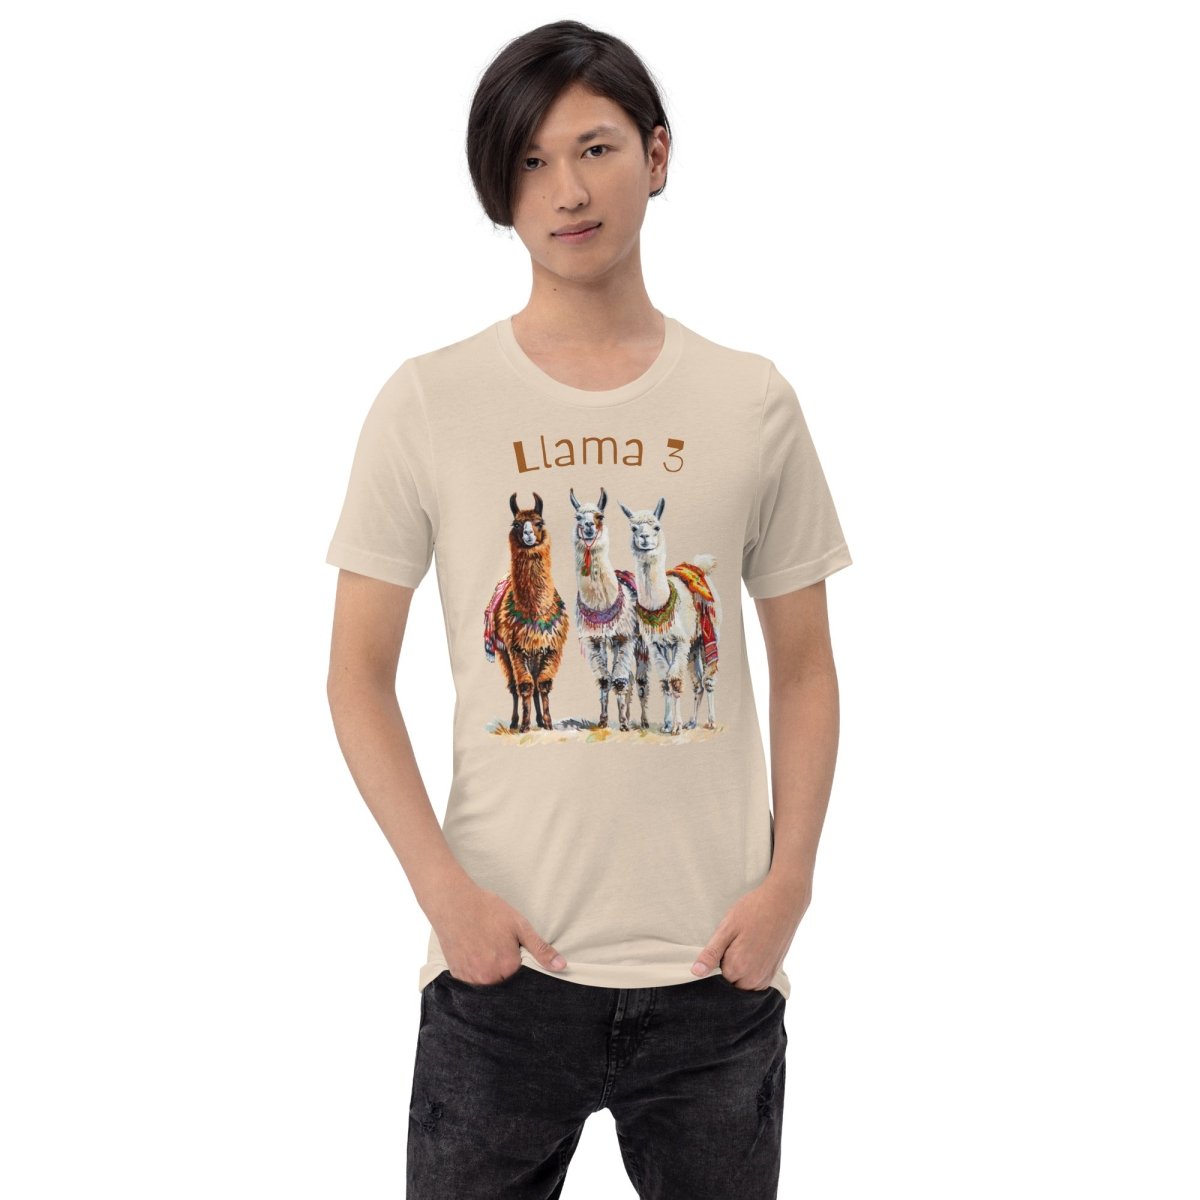 3 Llama 3 Llamas T - Shirt (unisex) - Soft Cream - AI Store